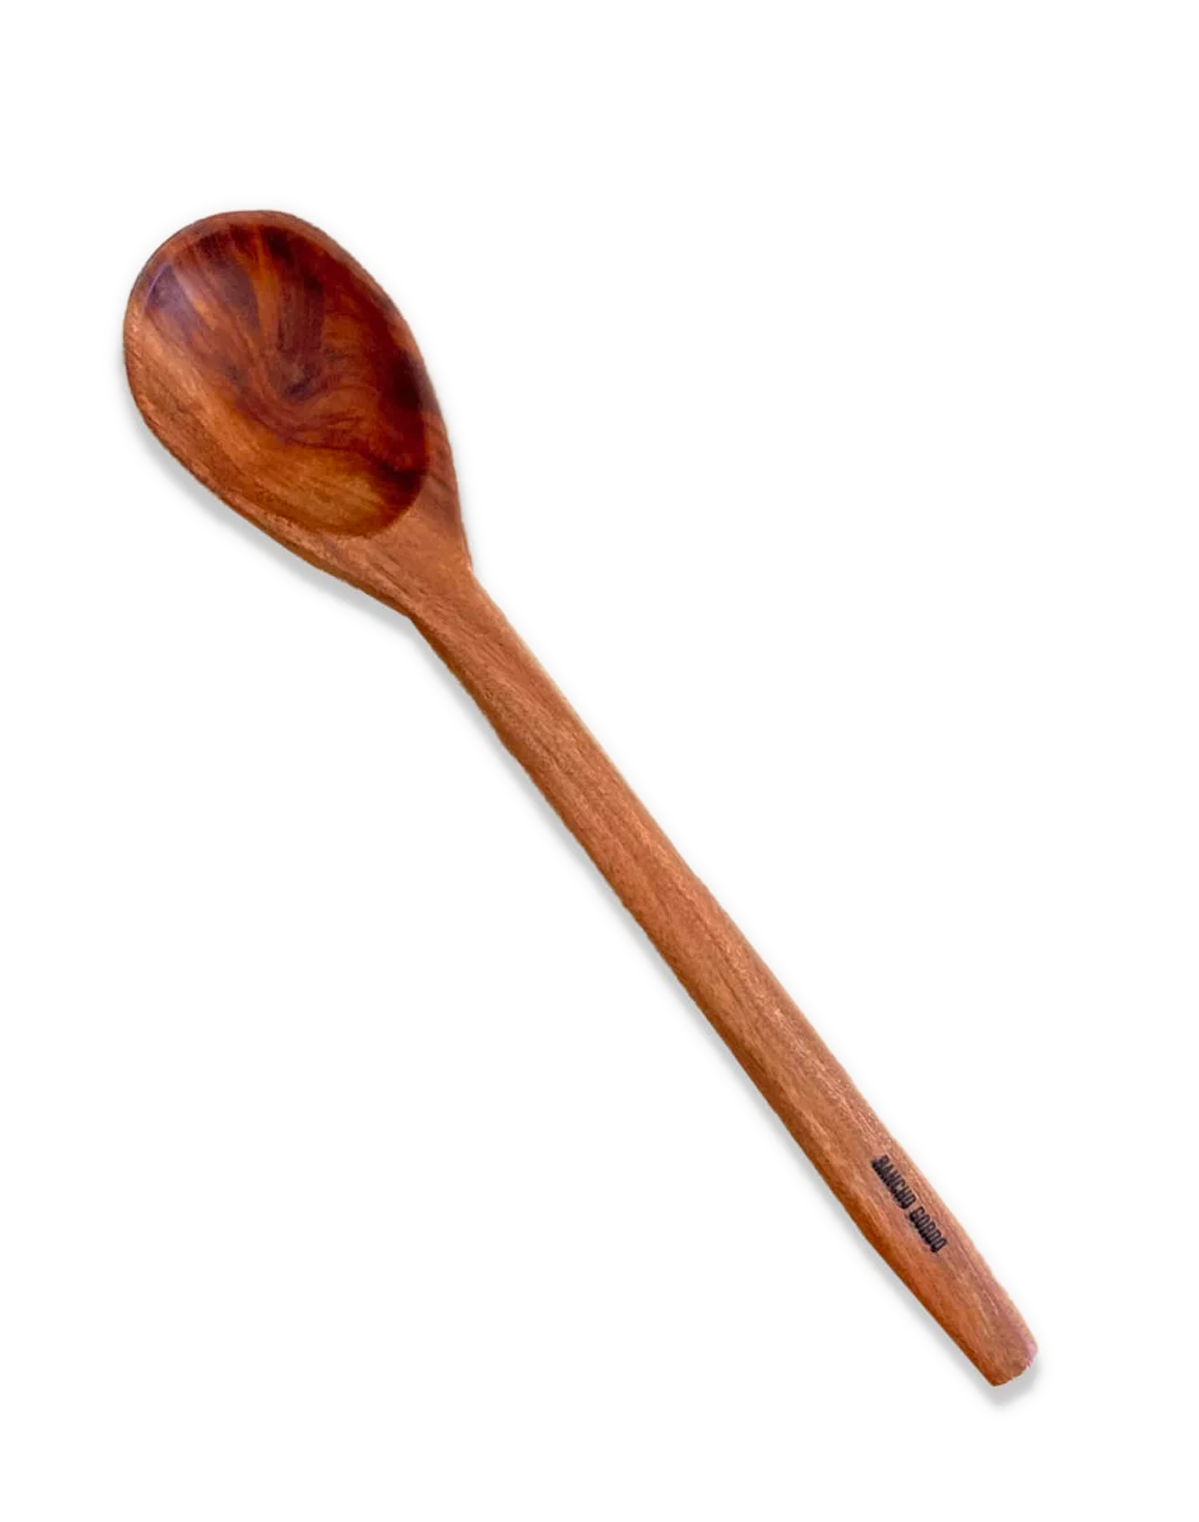 Rancho Gordo Wooden Spoon from Michoacan, Mexico - Apple Valley Emporium